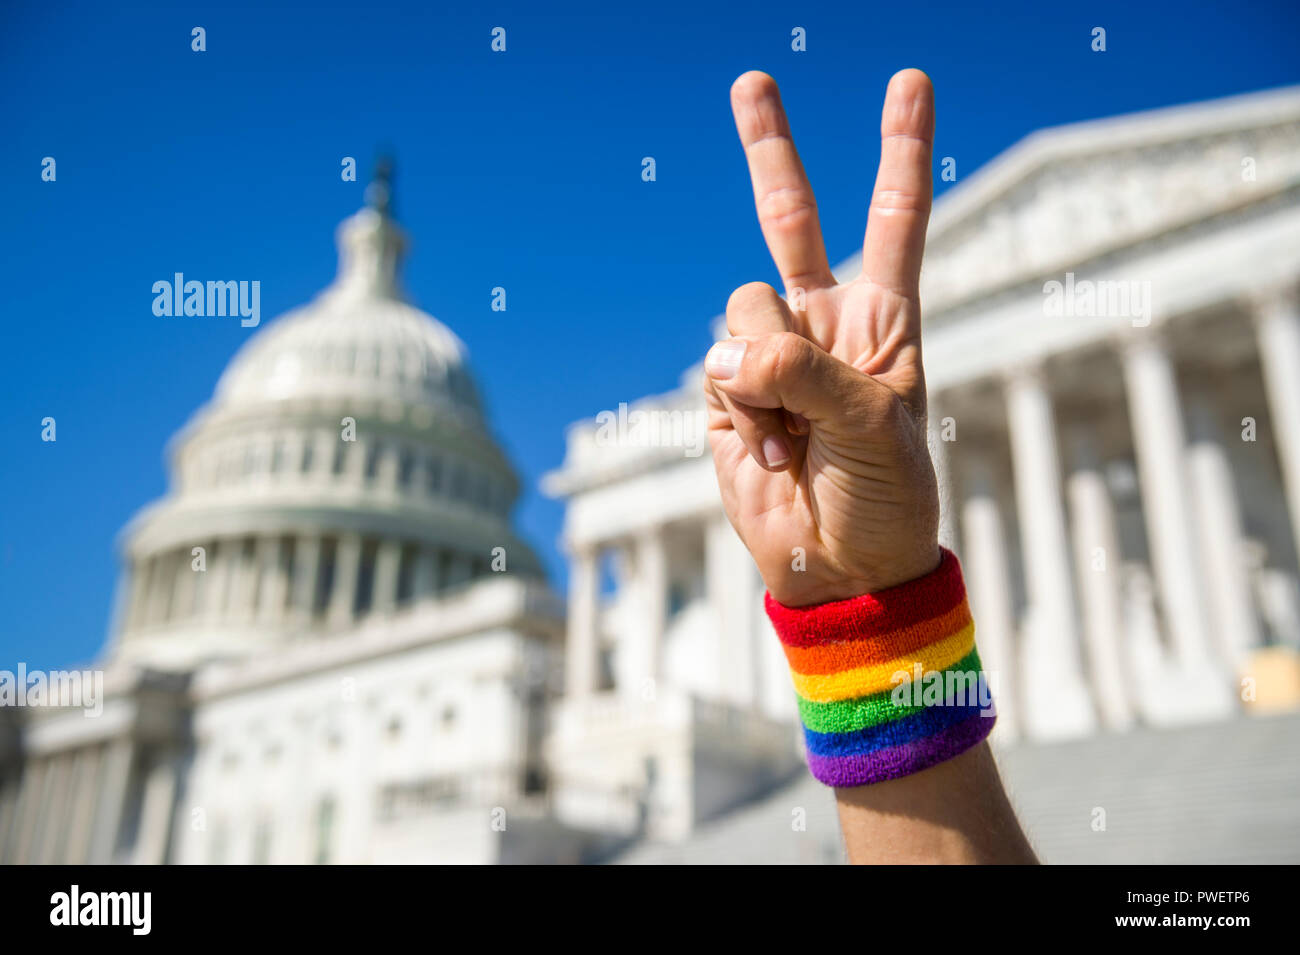 La main avec gay pride bracelet arc-en-ciel faisant un signe de la paix devant le Capitole à Washington, DC, USA Banque D'Images